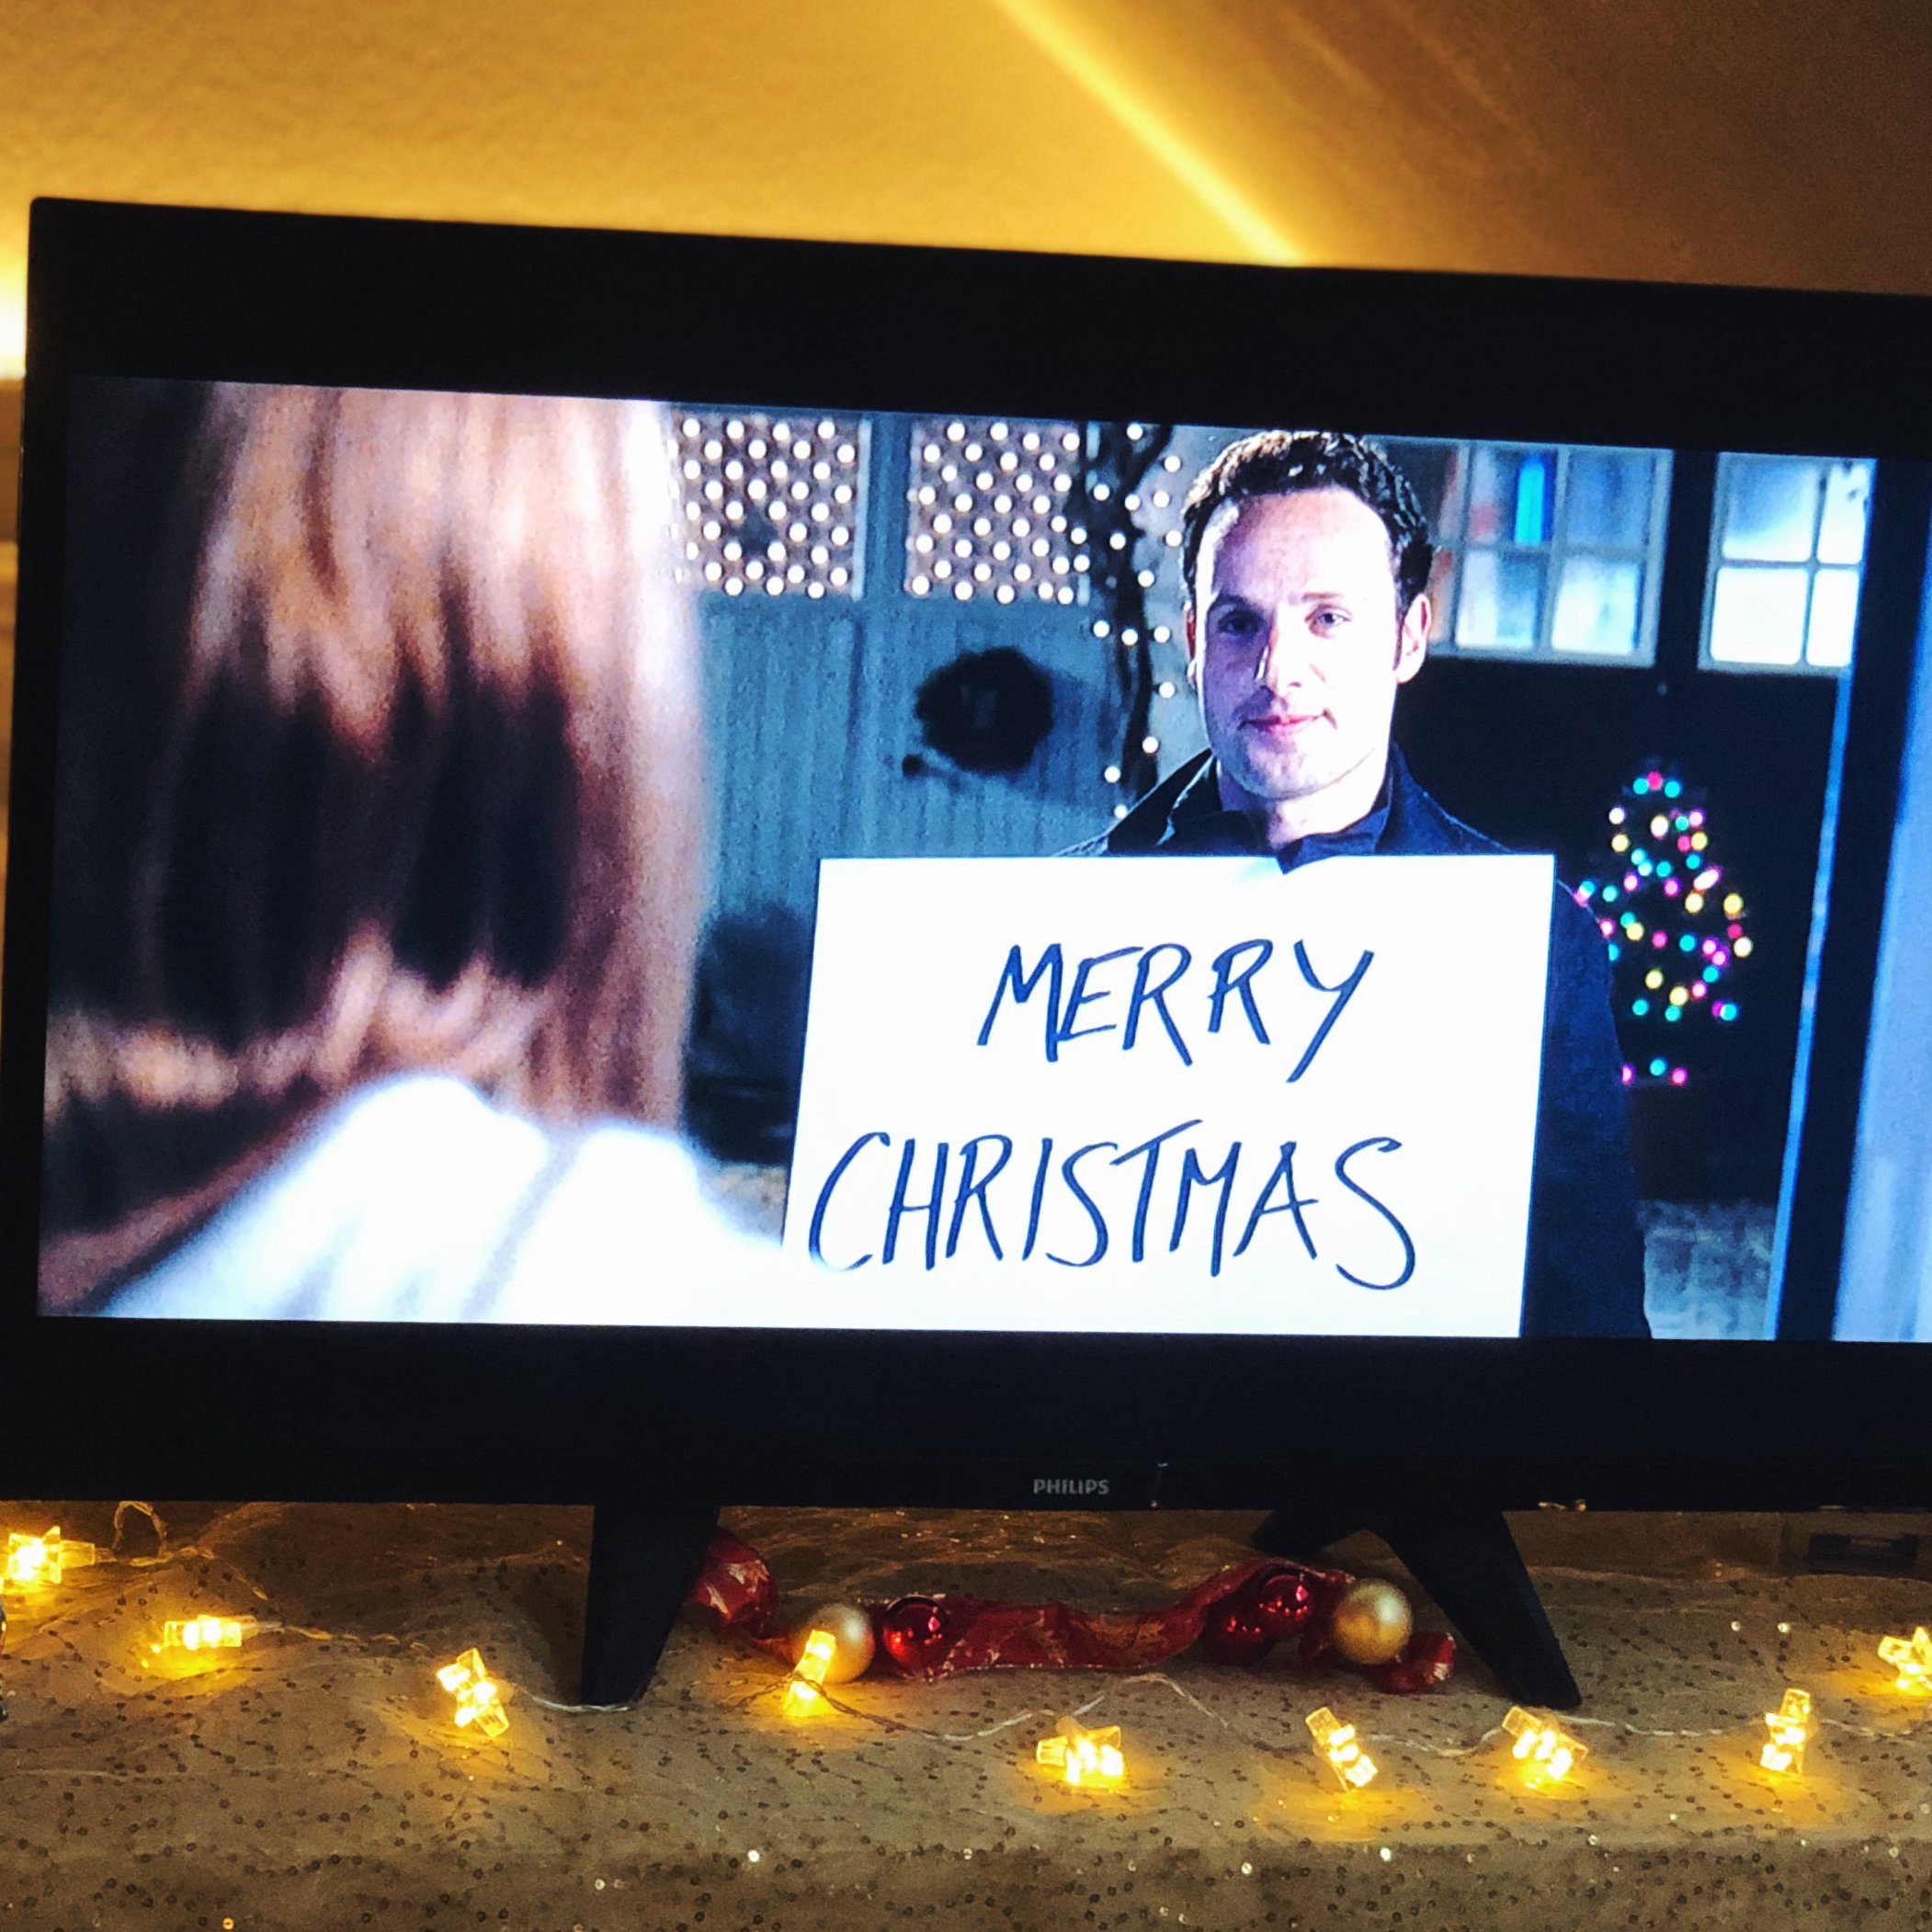 Fernseher, auf dem ein Weihnachtsfilm läuft und Weihnachtsdekoration.